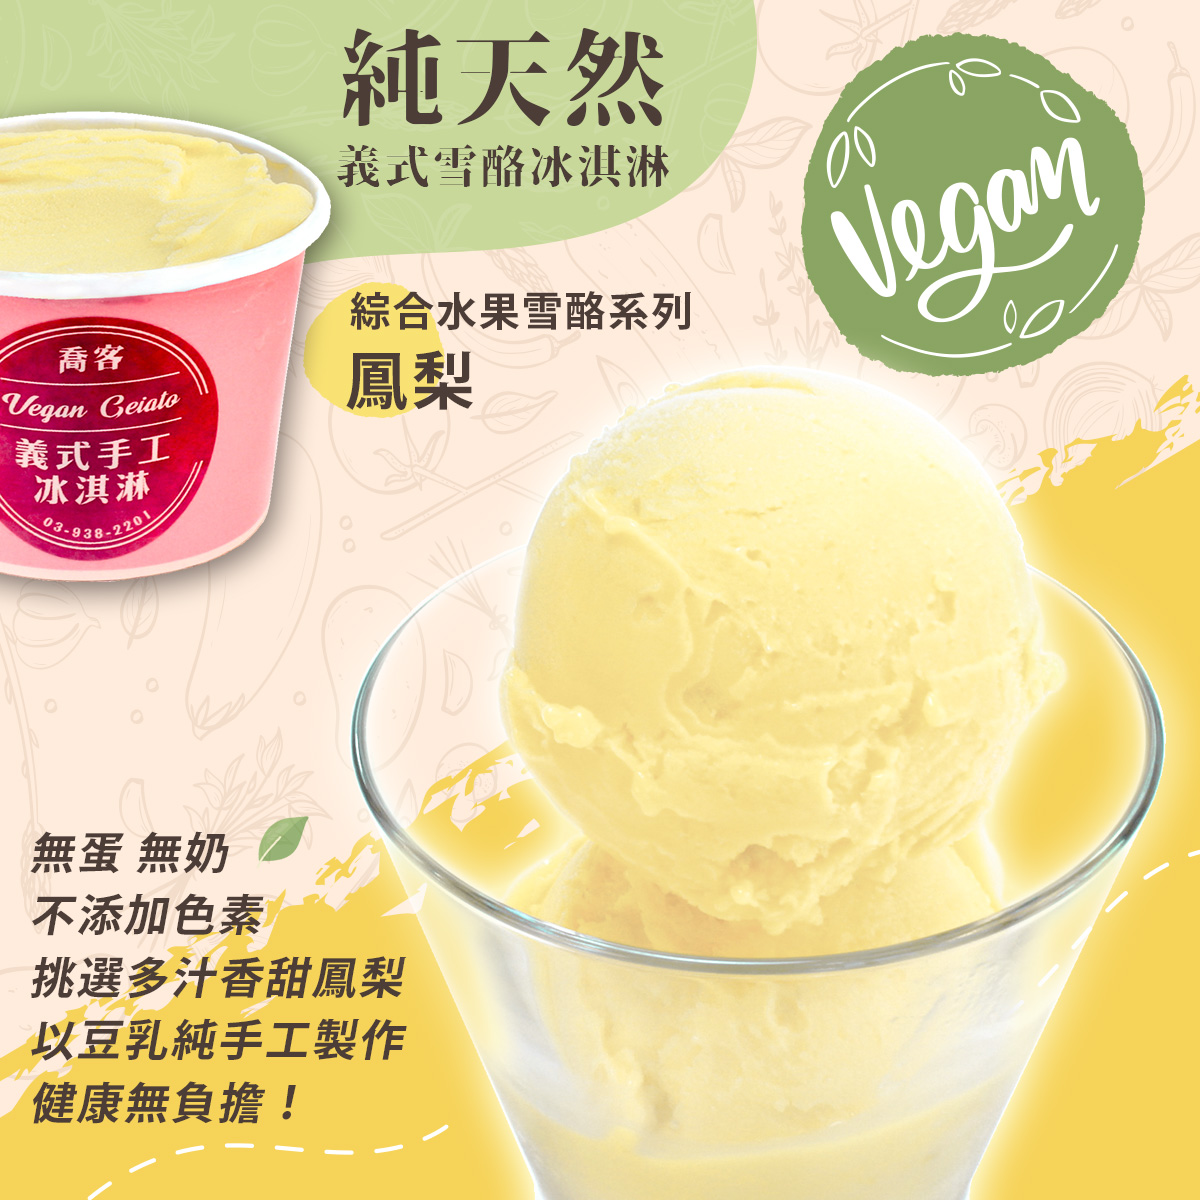 【喬客】水果雪酪系列-鳳梨 冰淇淋